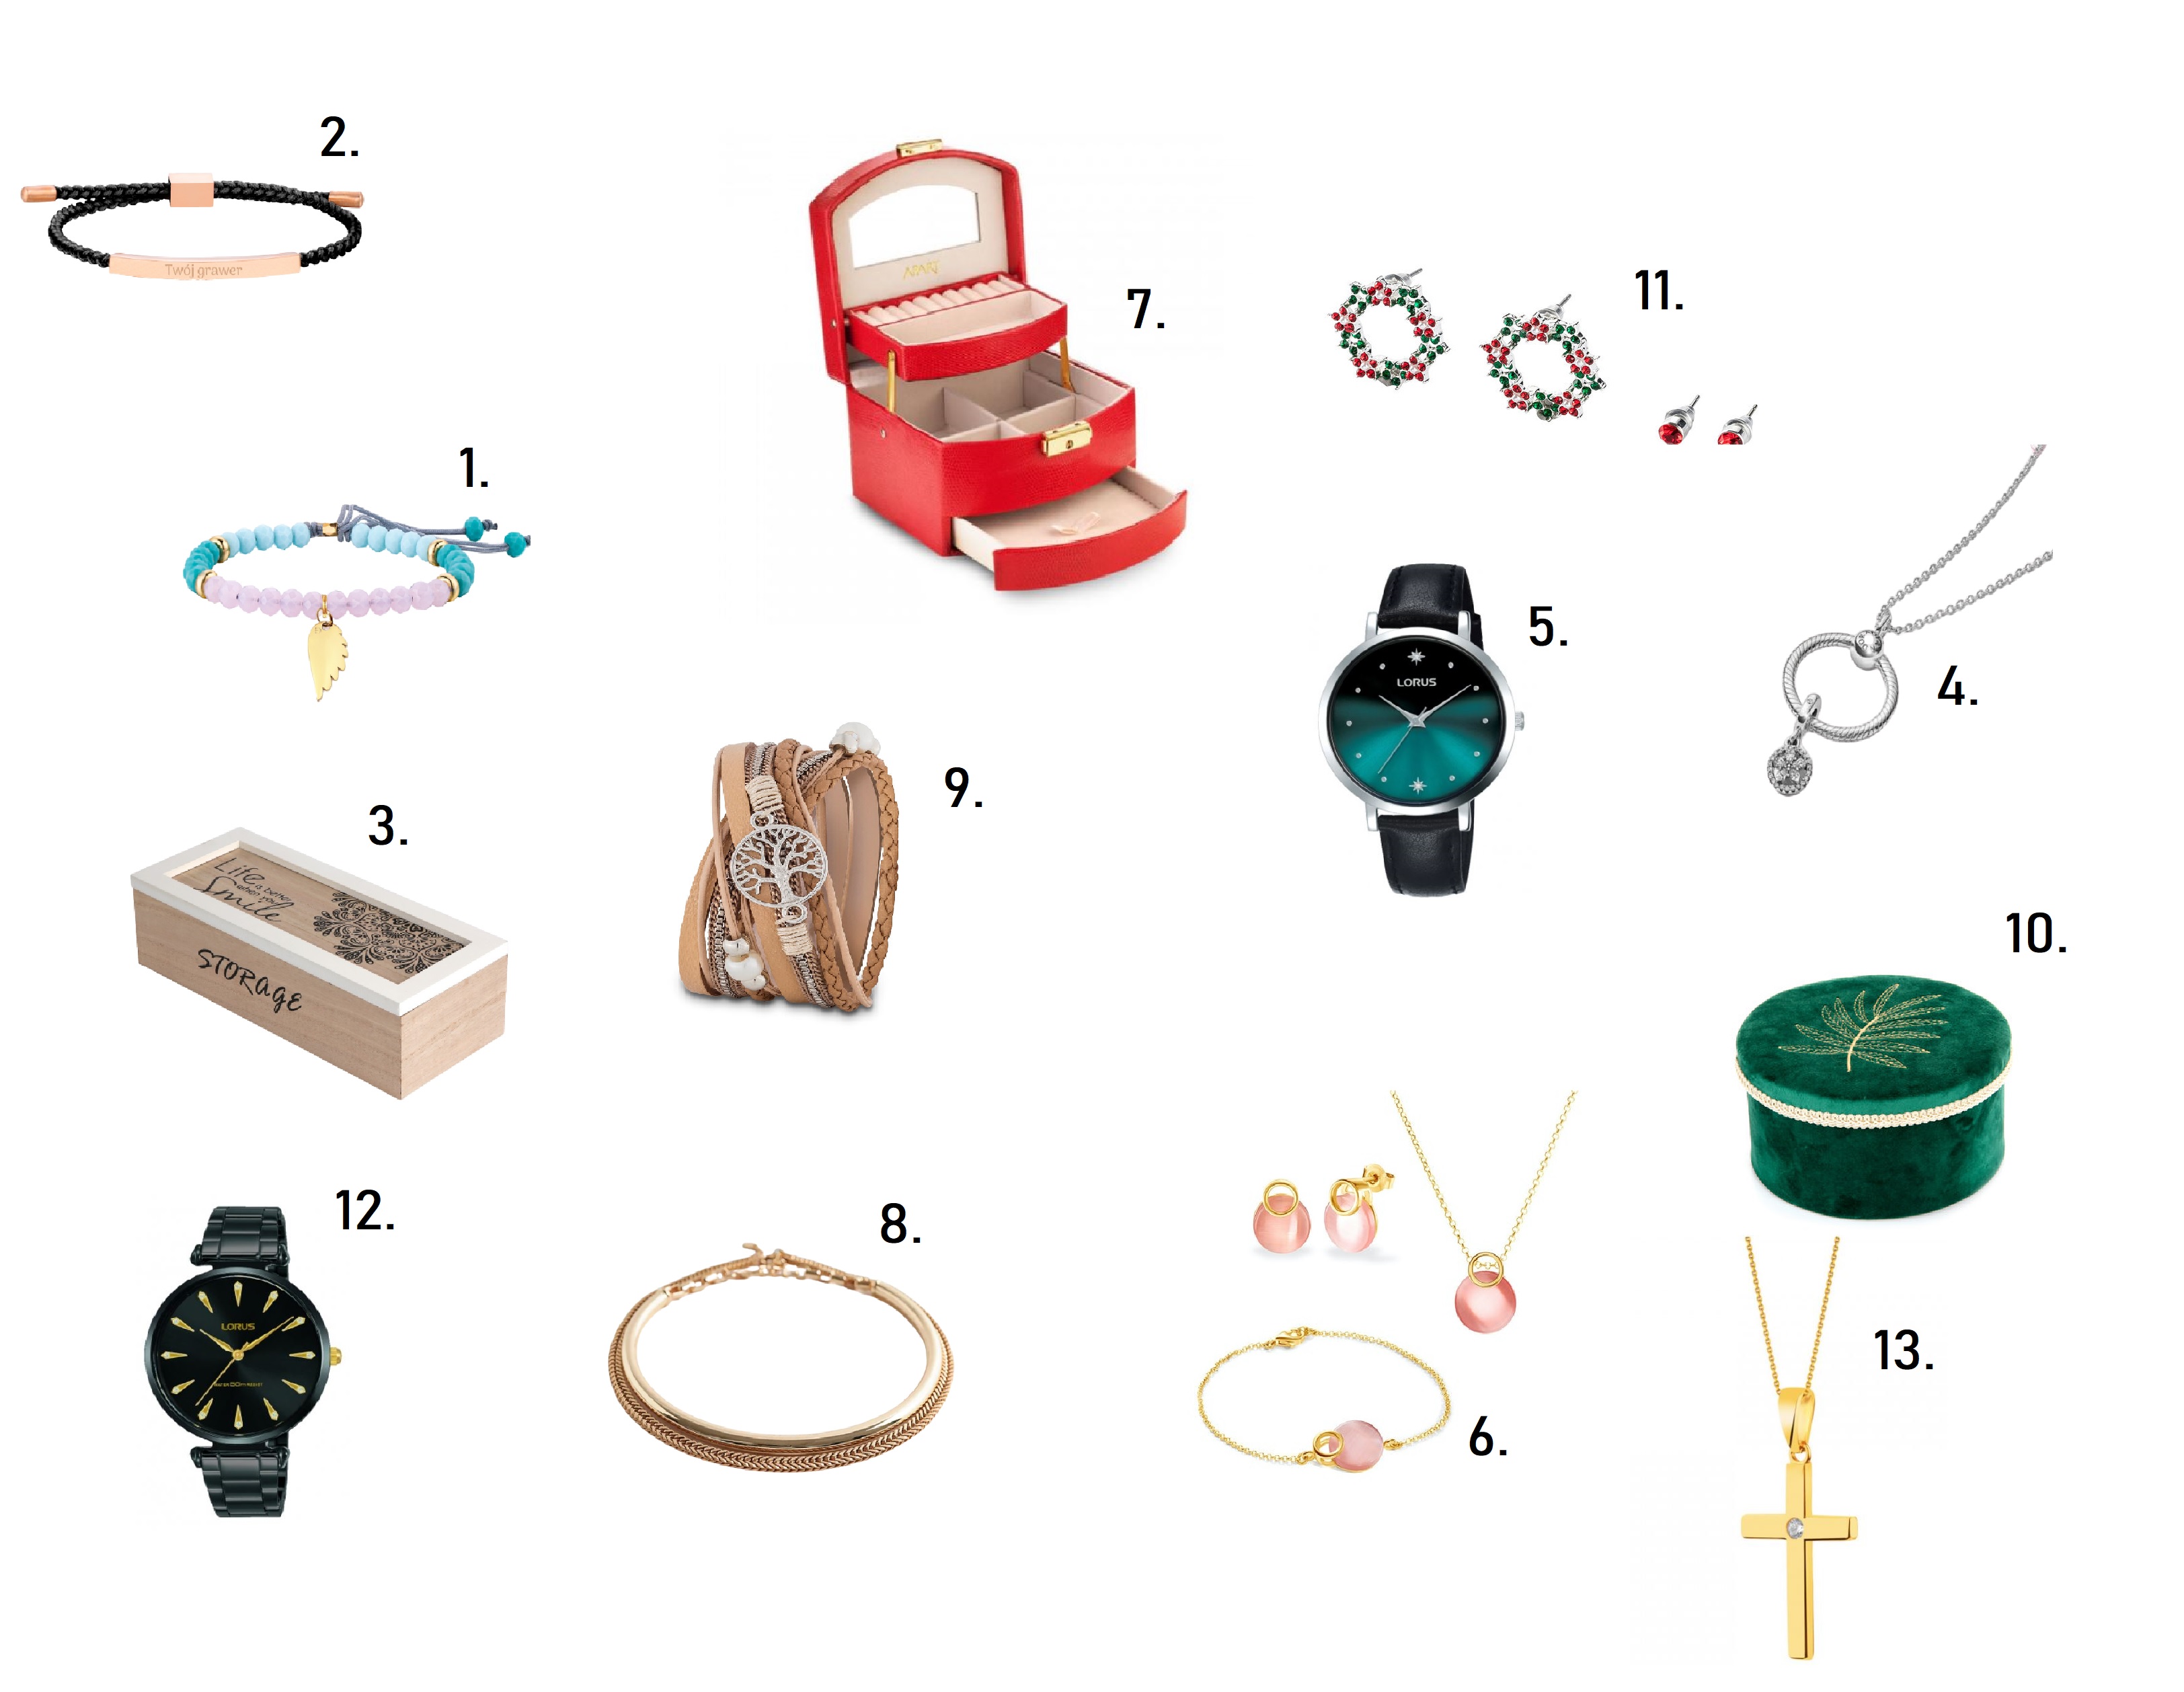 BIŻUTERIA - PIĘKNY PREZENT DLA NIEJ - Szkatułka na biżuterię, kolczyki świąteczne, zegarek kwarcowy, komplet biżuterii, bransoletki z grawerem - prezent pod choinkę do 300 zł